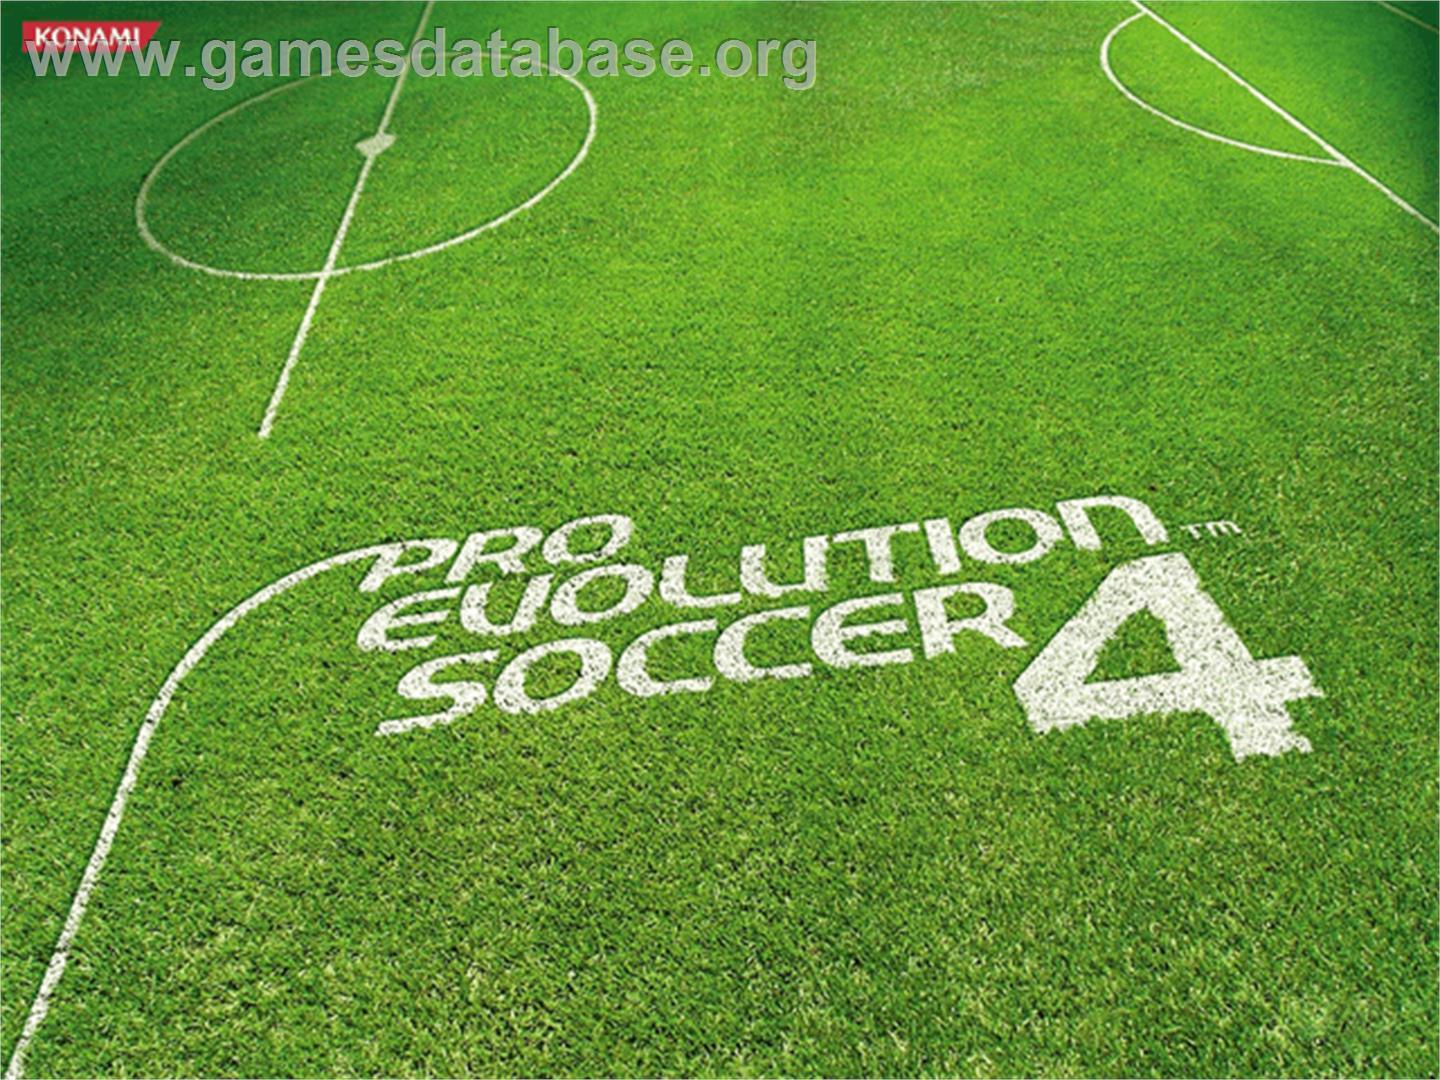 Pro Evolution Soccer 4 - Microsoft Xbox - Artwork - Title Screen